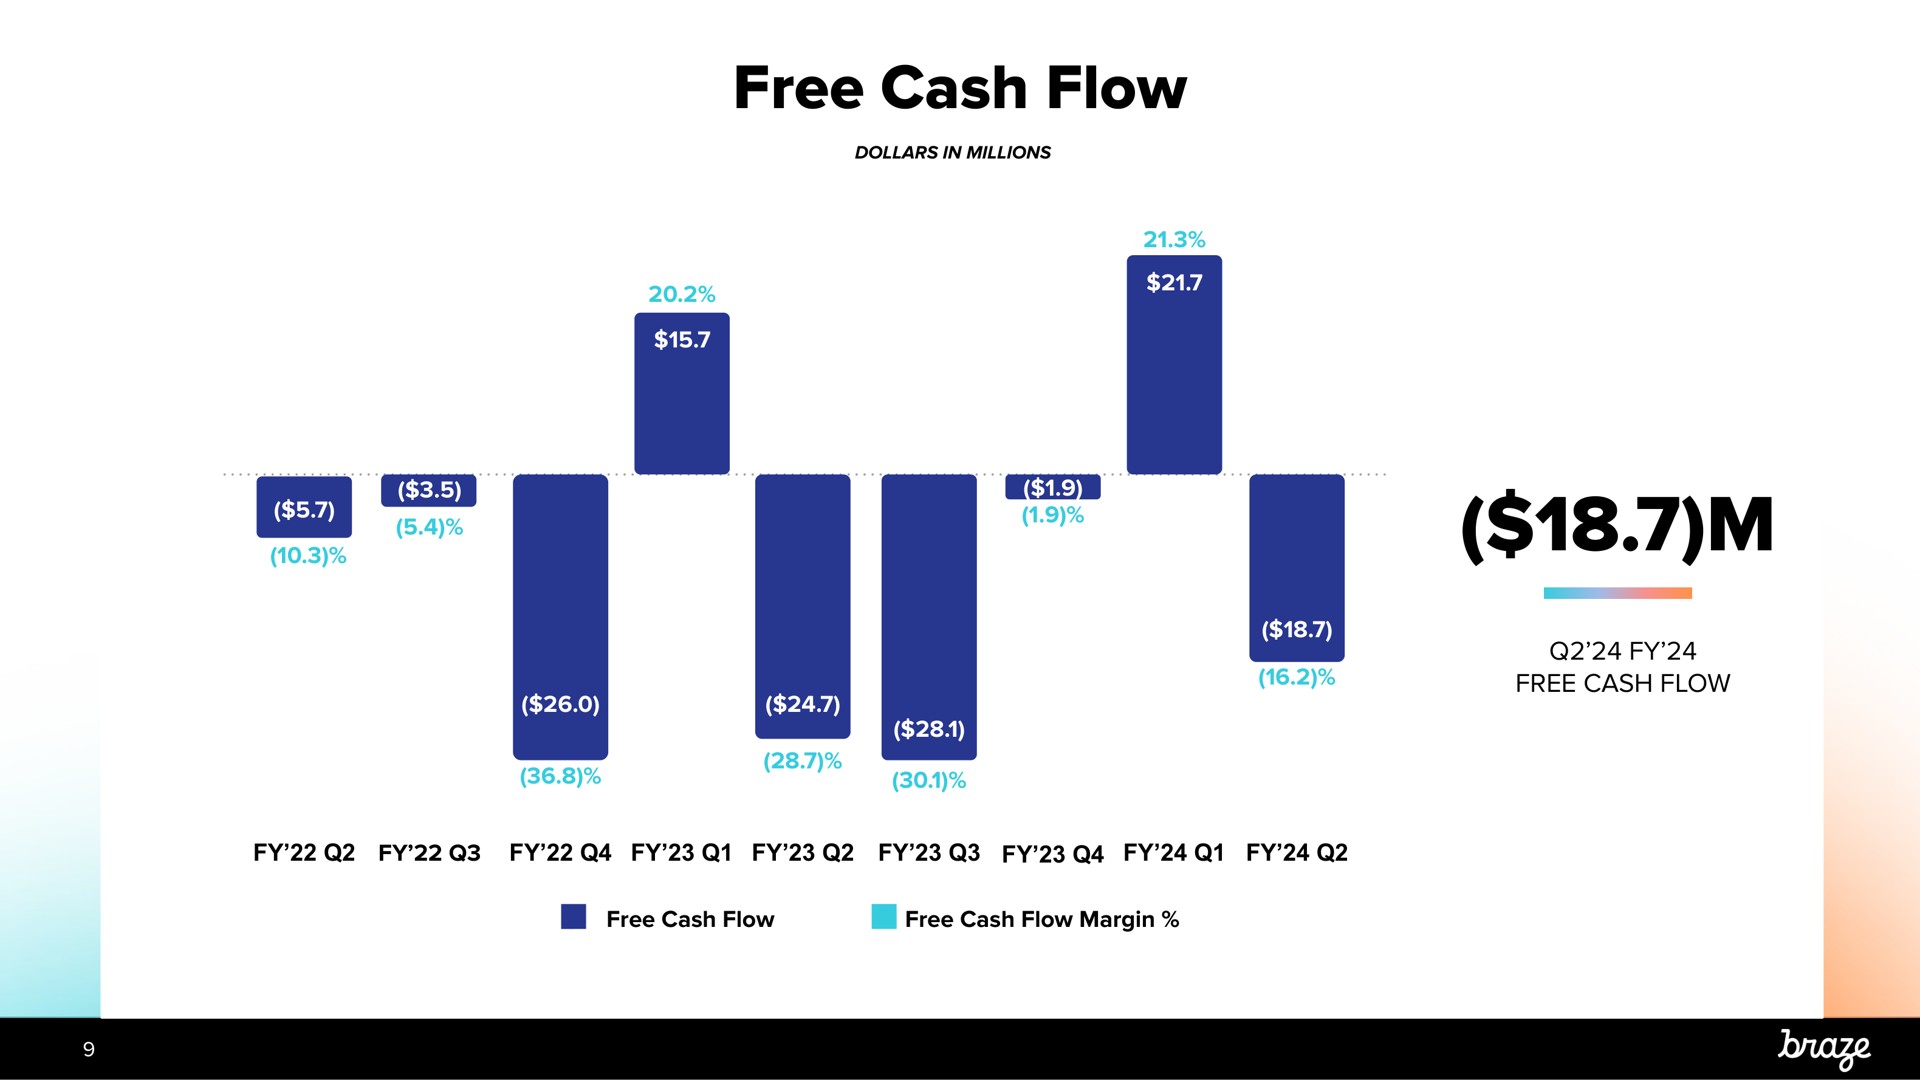 free cash flow | Braze